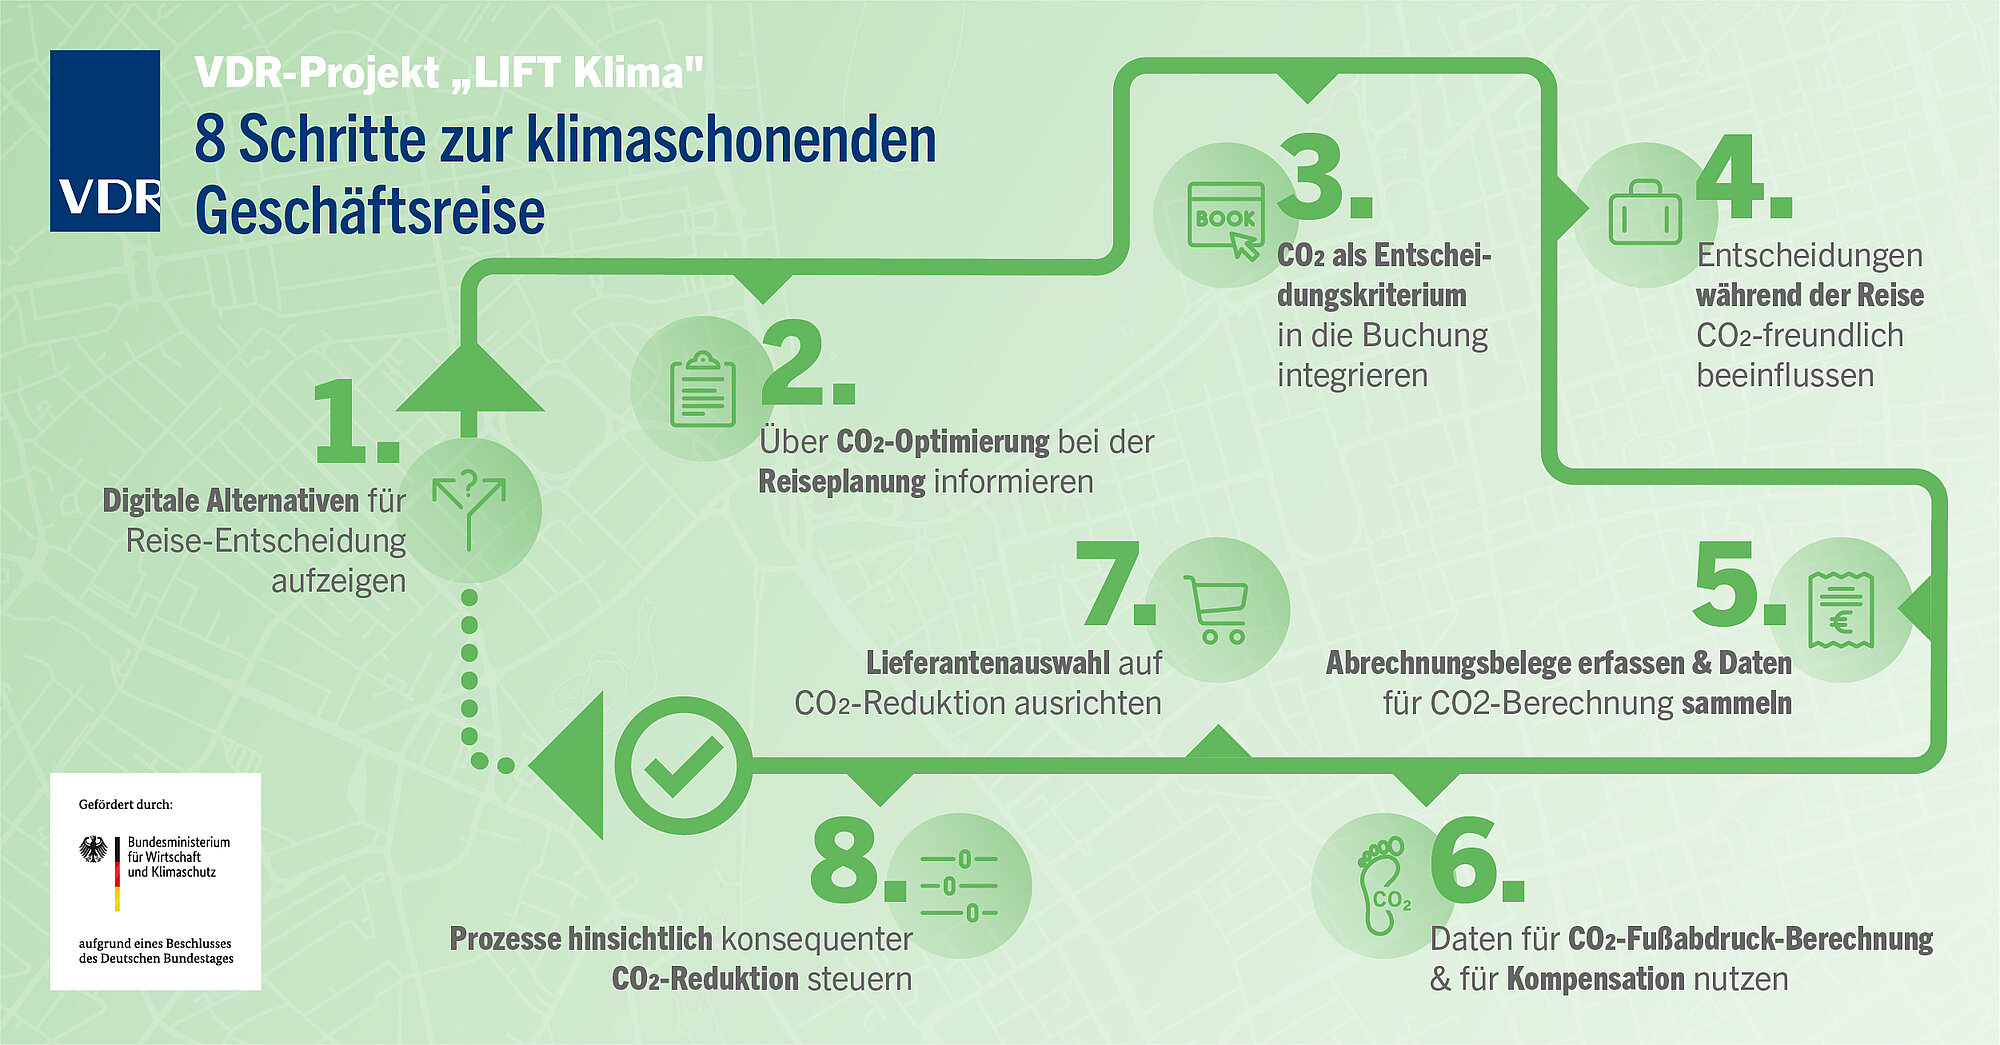 Das 8-Schritte-Modell für einen klimaschonenden Geschäftsreiseprozess: Apartmentanbieter könnten hier an verschiedenen Stellen mit Angeboten und Lösungen Präsenz zeigen. © Verband Deutsches Reisemanagement e. V.